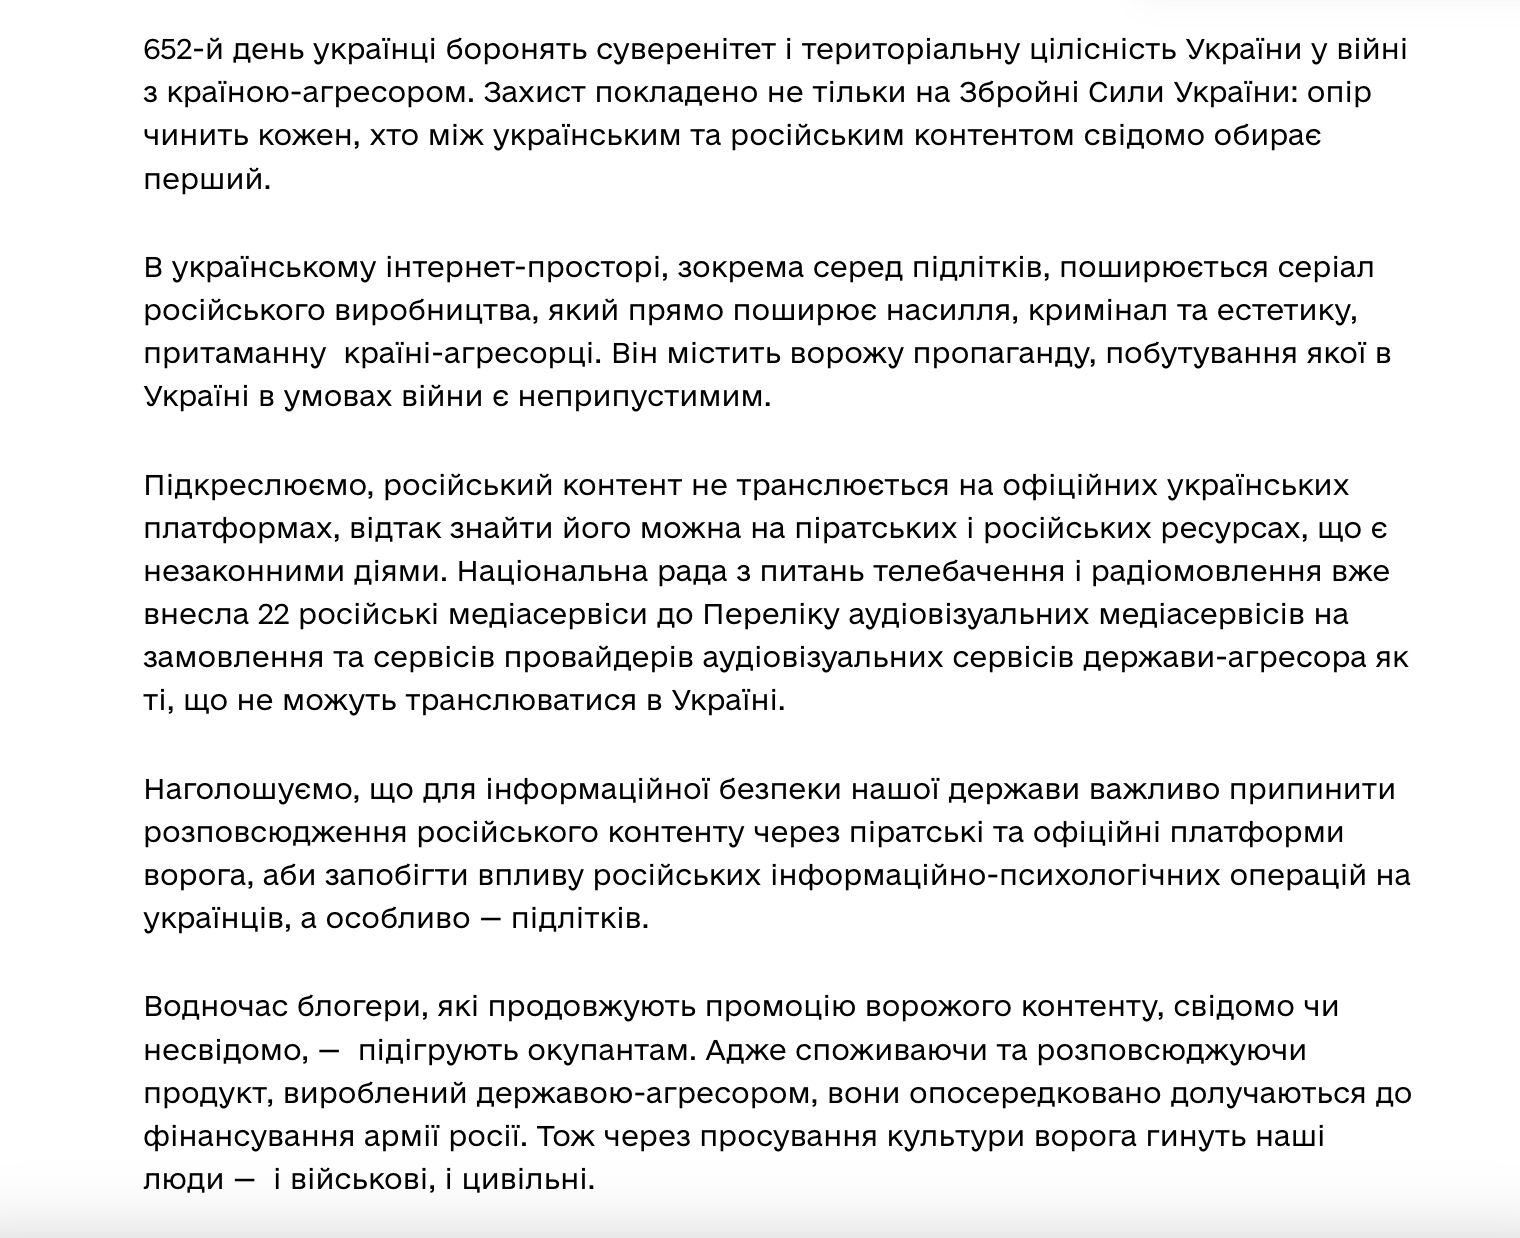 Минкульт обратился к украинцам из-за "Слова пацана" и попросил блогеров не подыгрывать врагу: это ИПСО, которая убивает людей